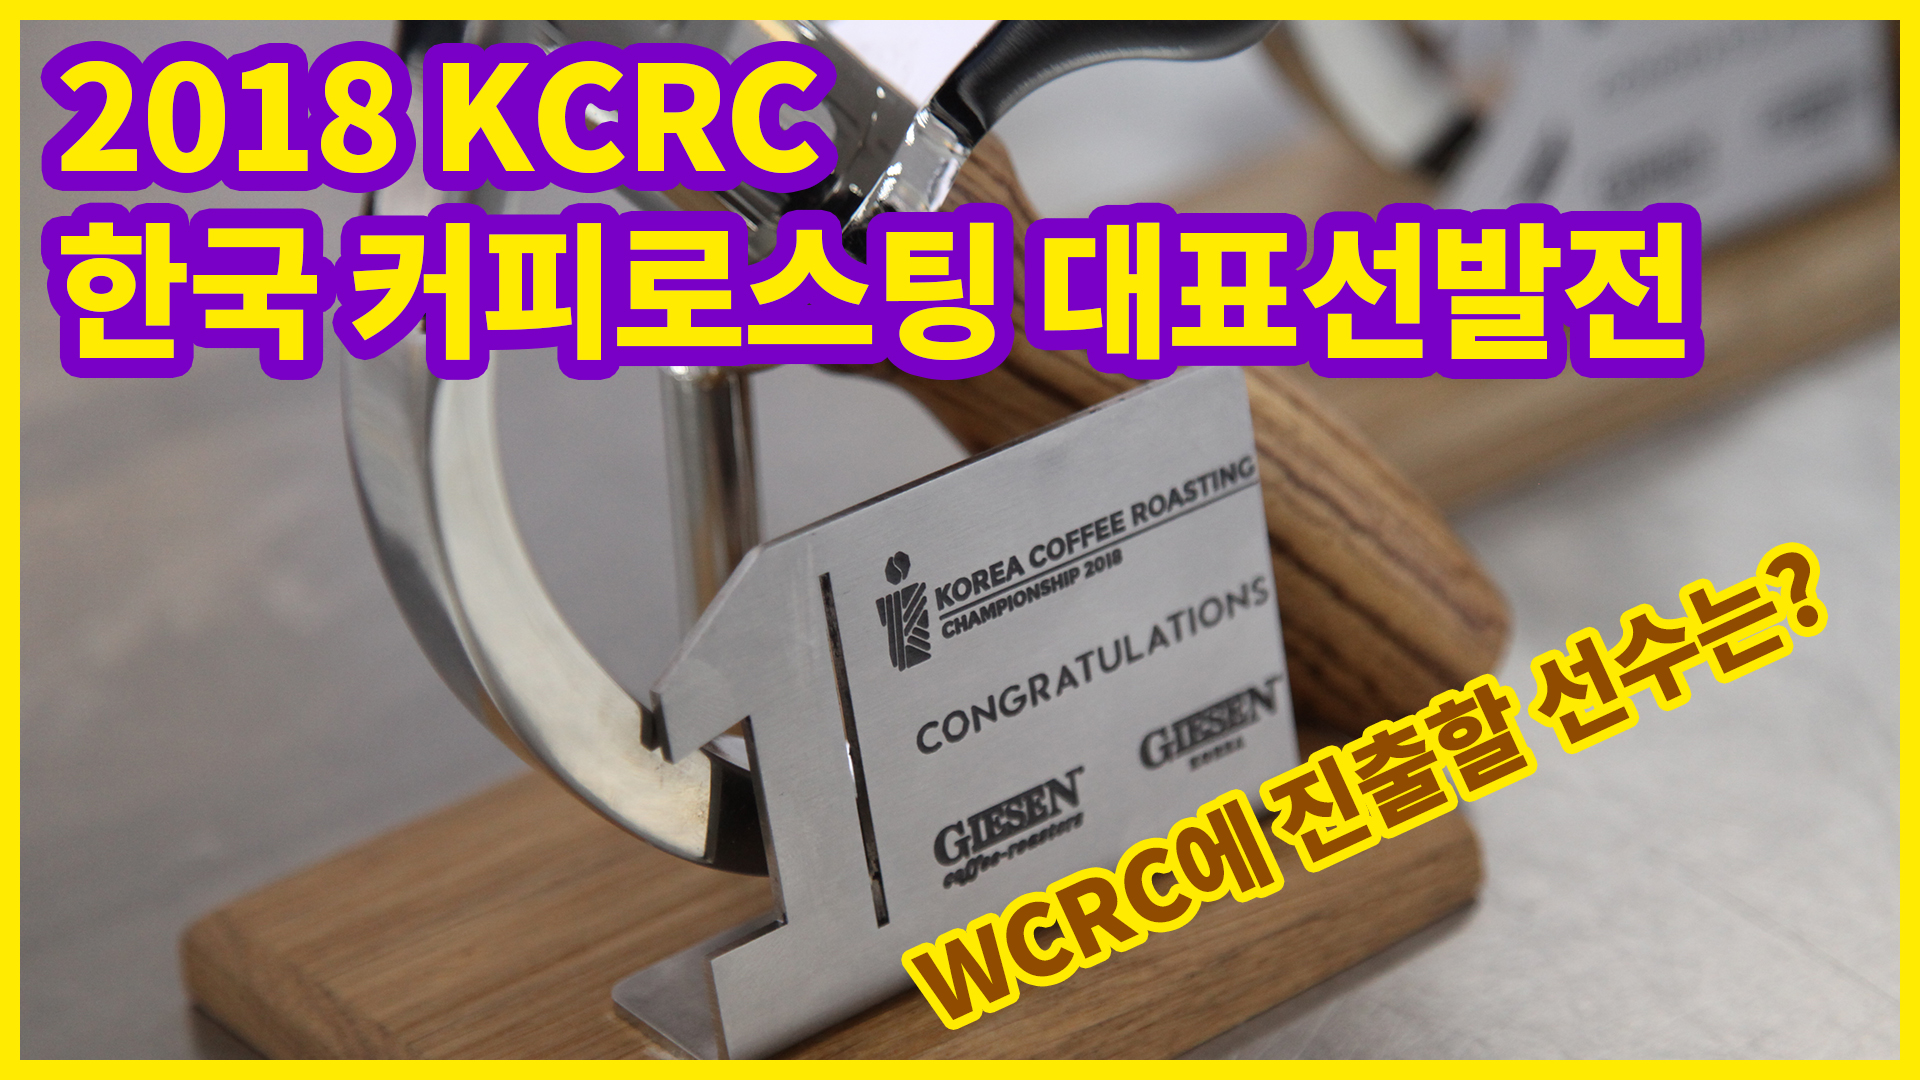 2018 한국커피로스팅대표선발전(KCRC)의 예선 현장모습!